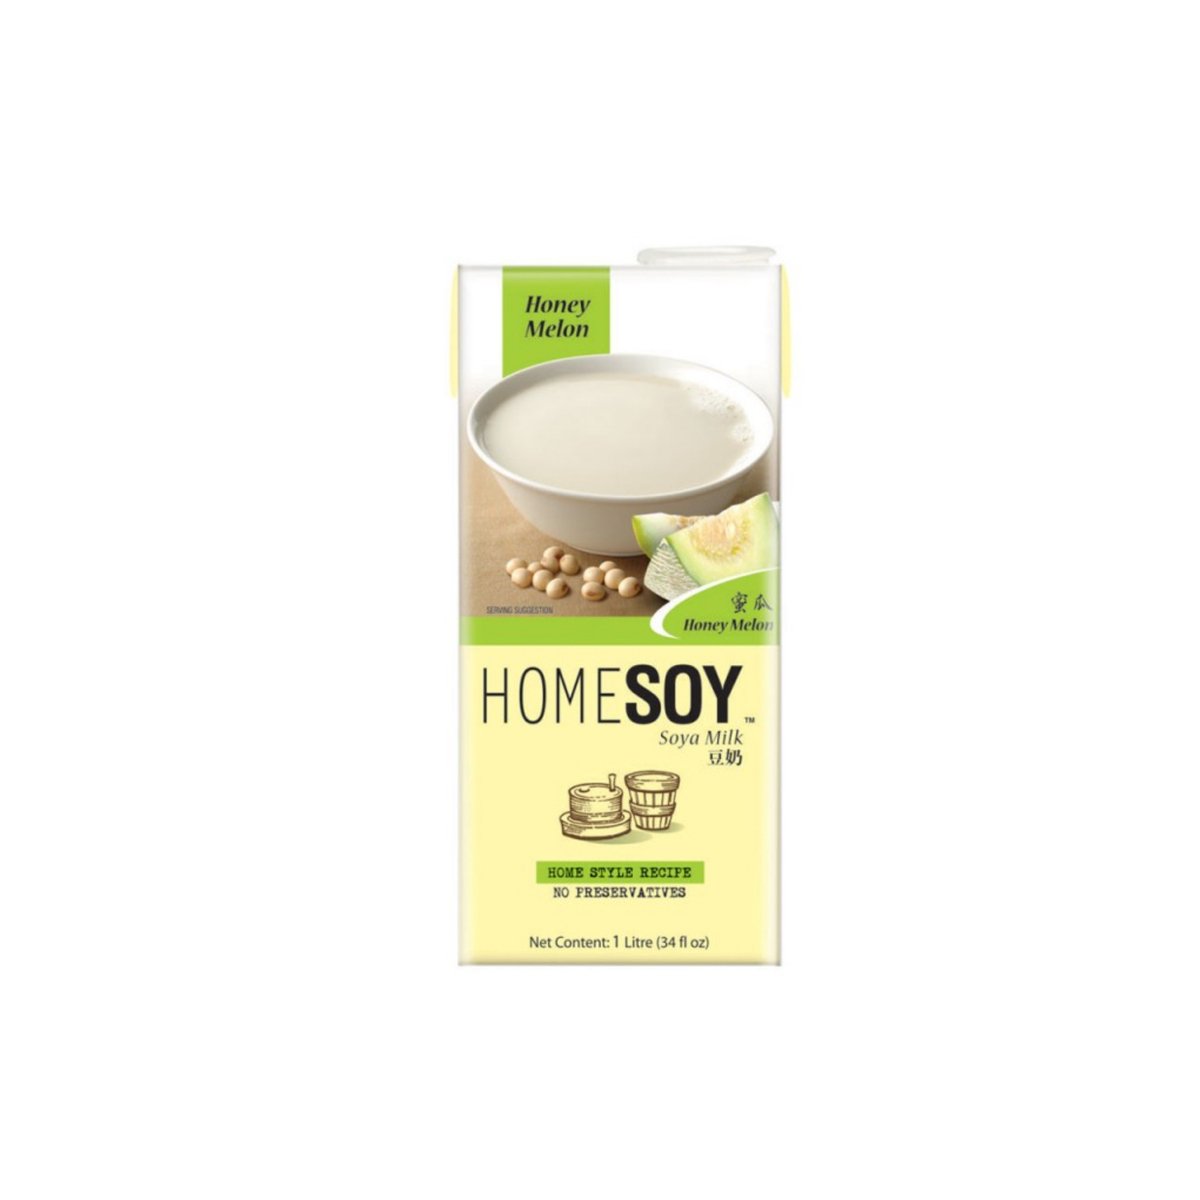 Homesoy Soya Milk Honey Melon 1Liter